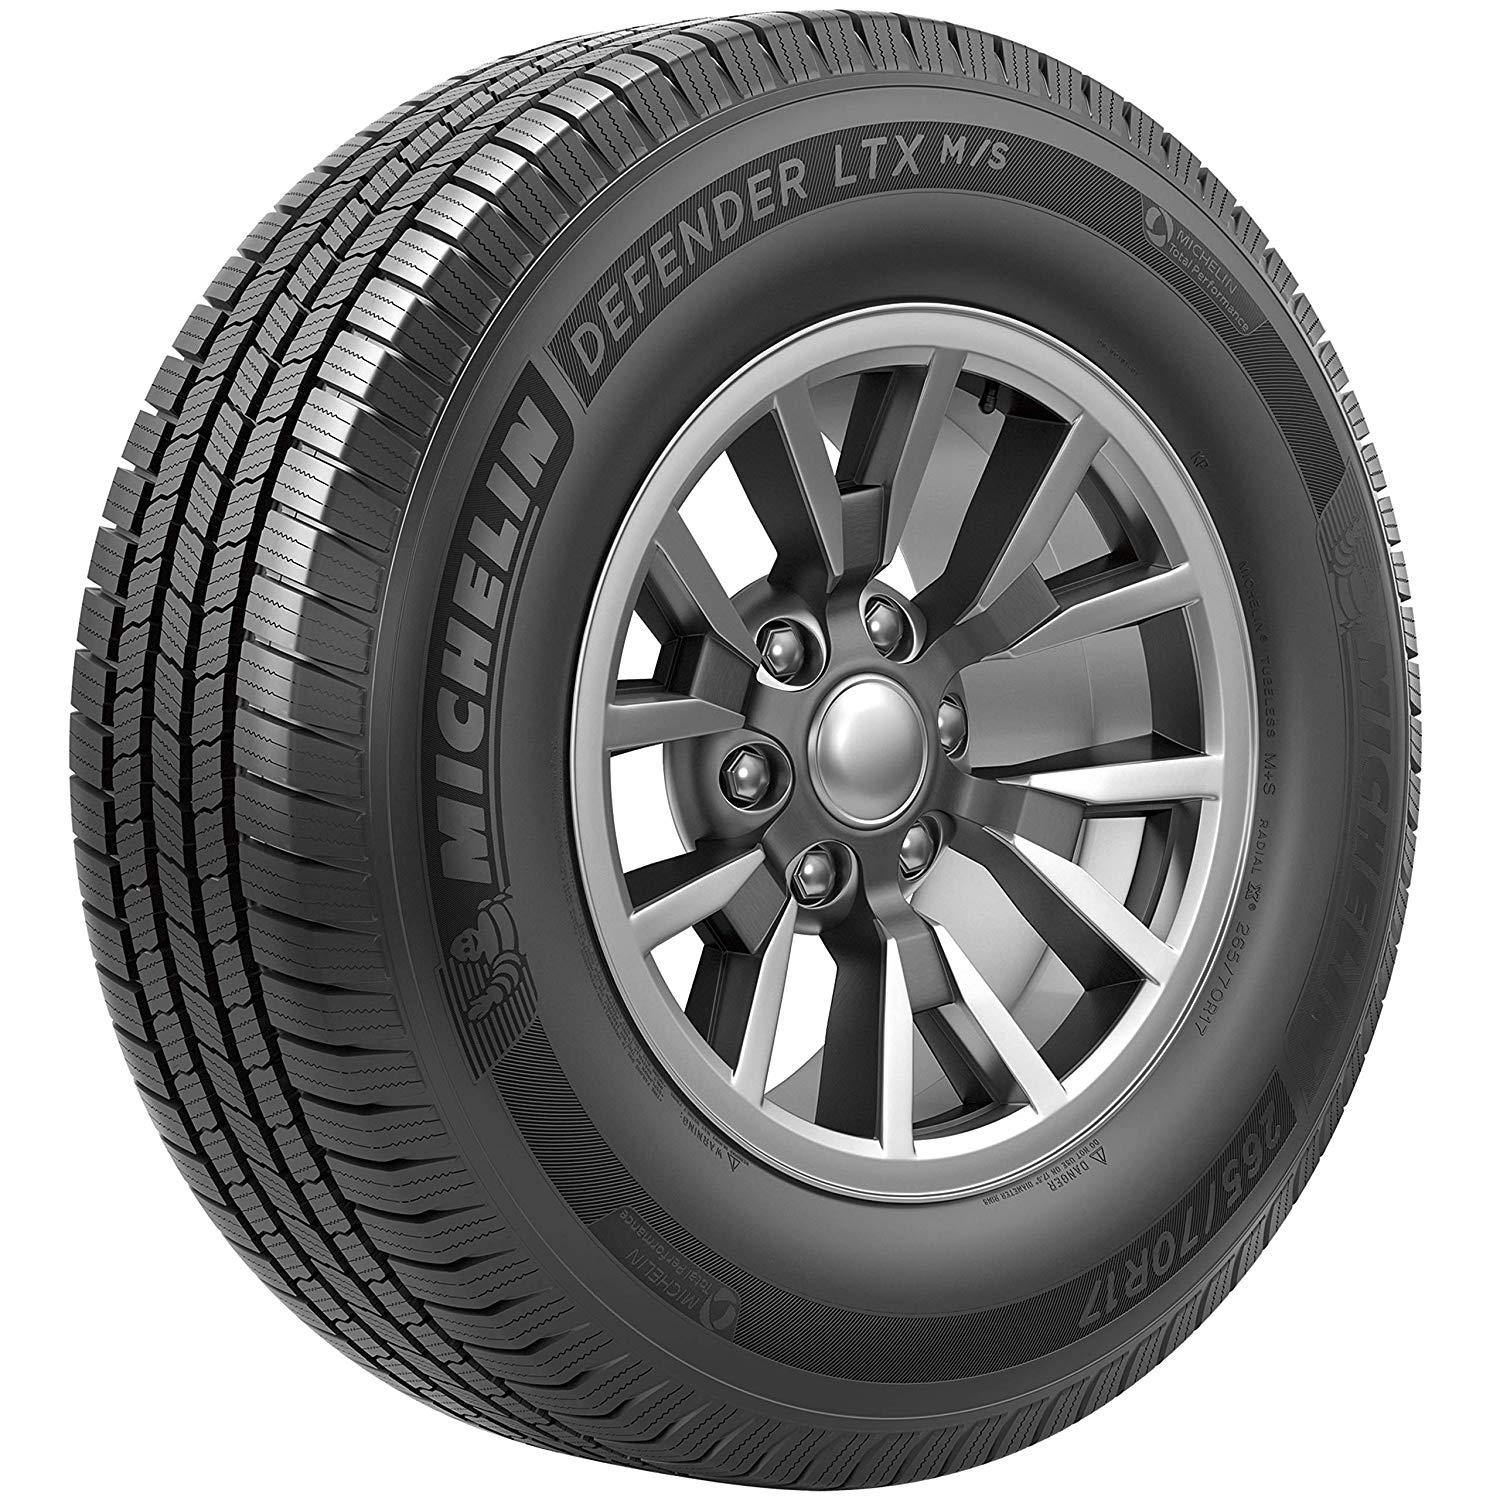 Michelin Defender LTX M/S All-Season 245/60R18 105H Tire - image 1 of 23